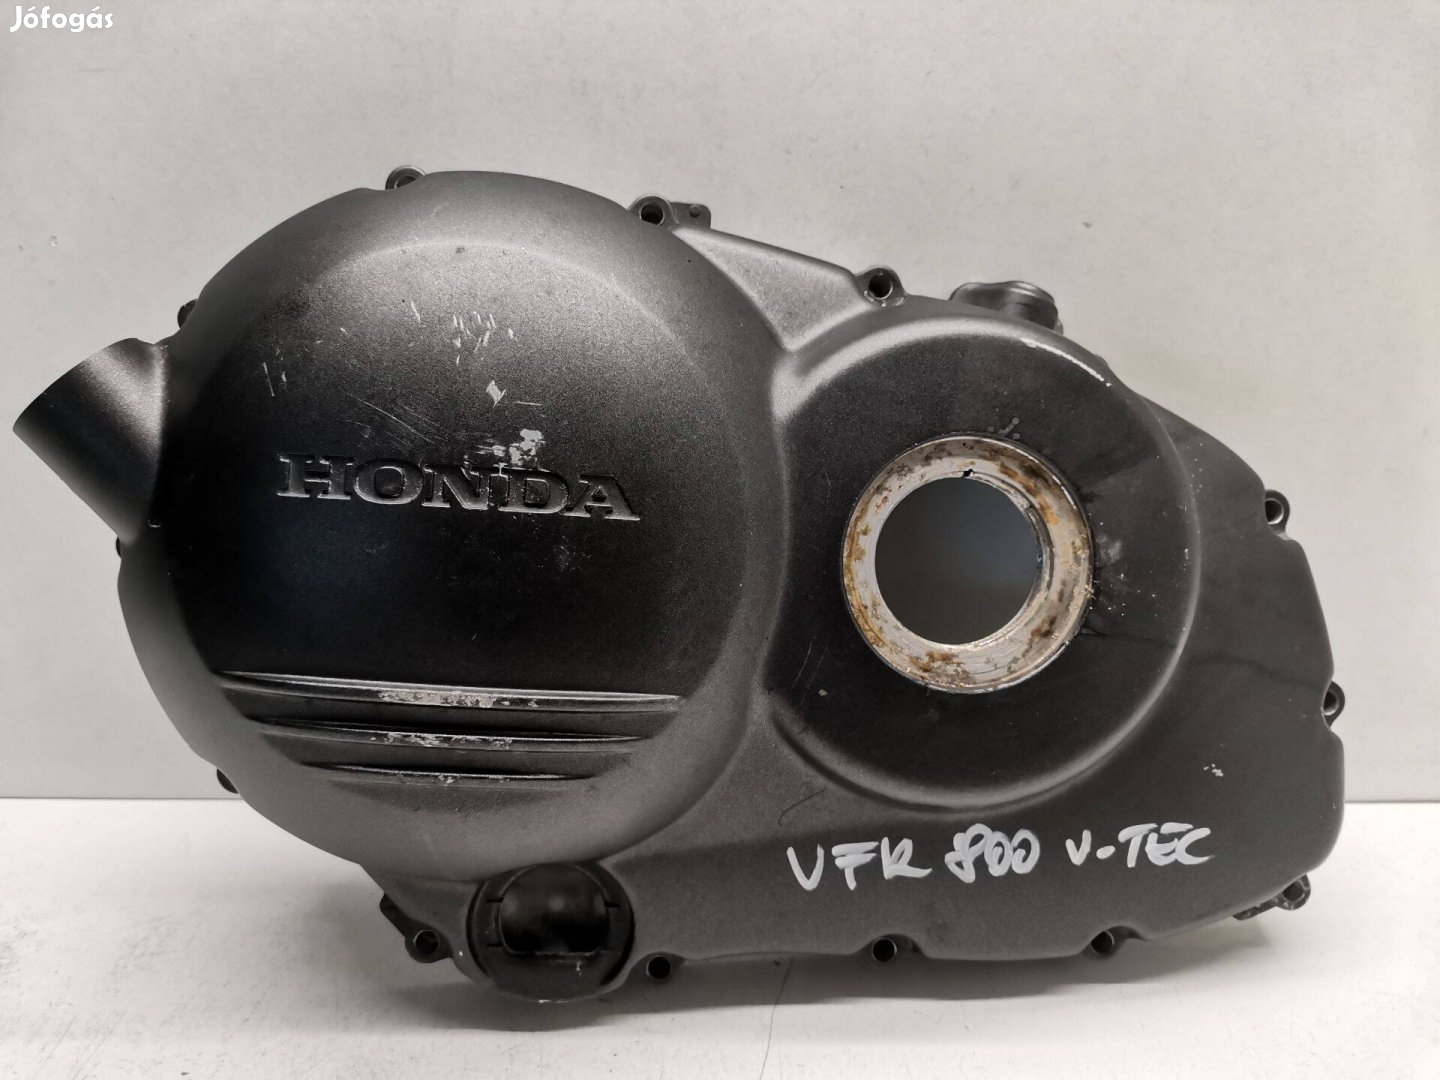 Honda VFR 800 V-TEC (2004) kuplung oldali dekni